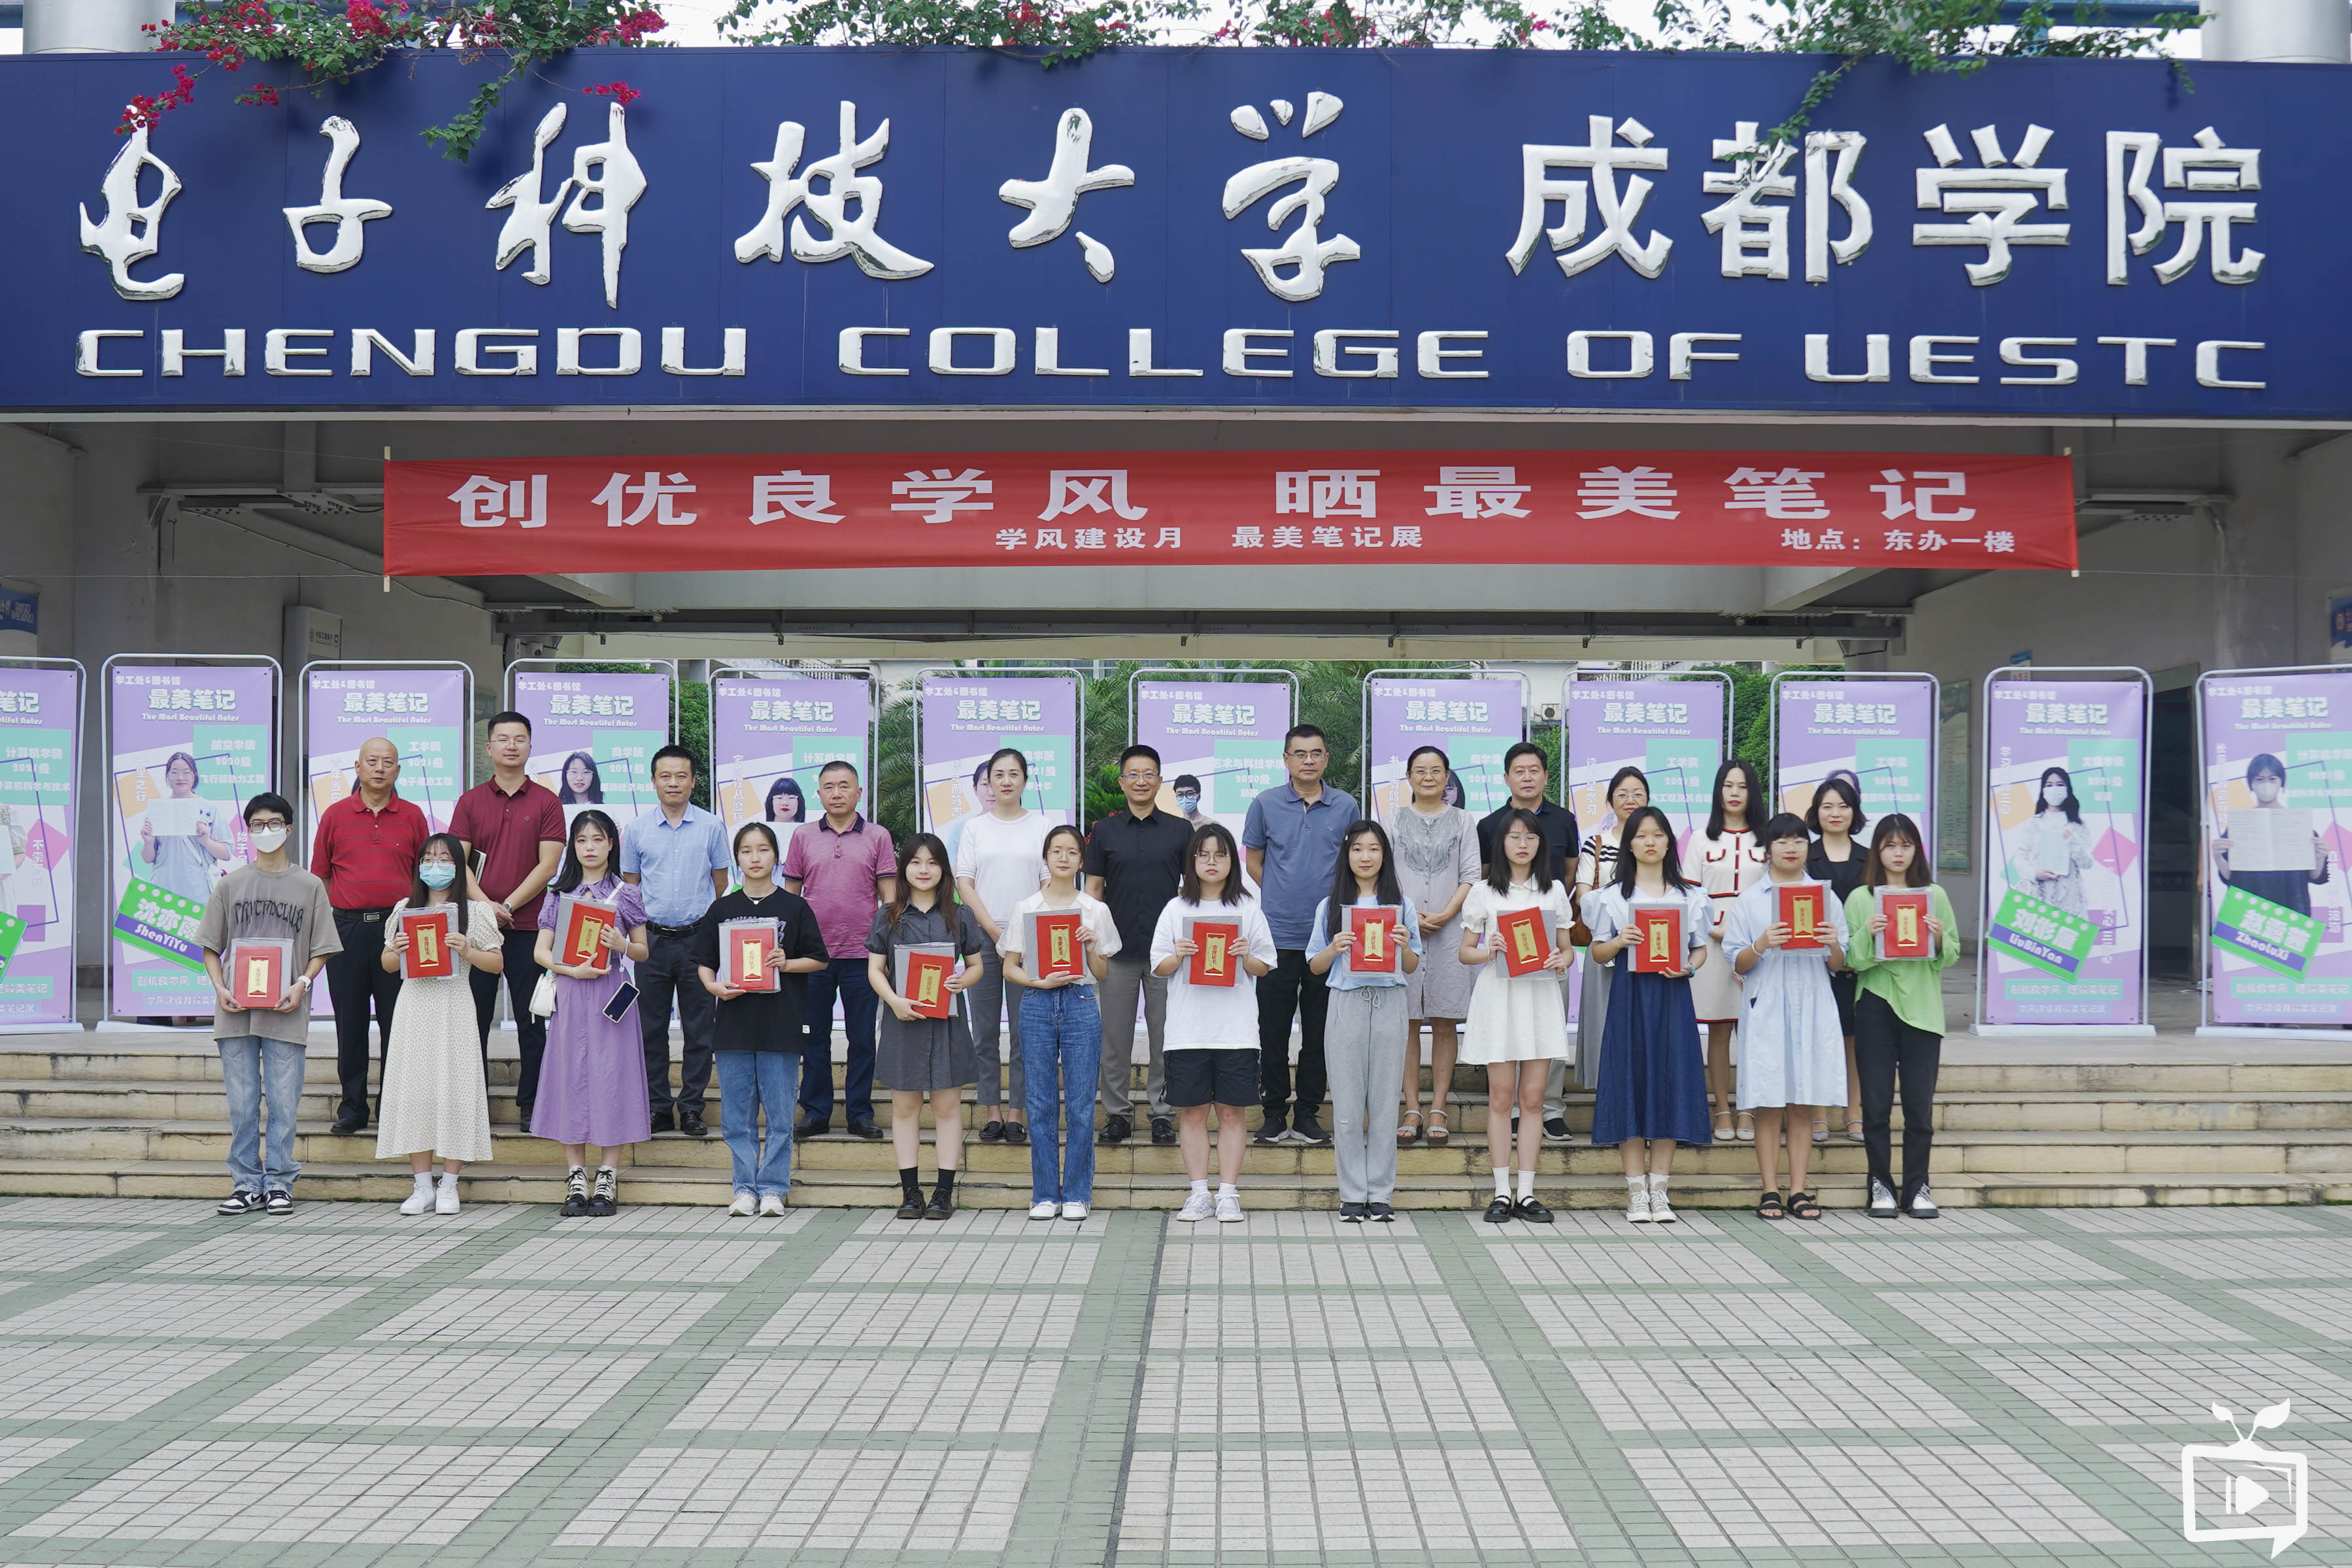  亚洲城ca88成都学院首届  “最美笔记”开展